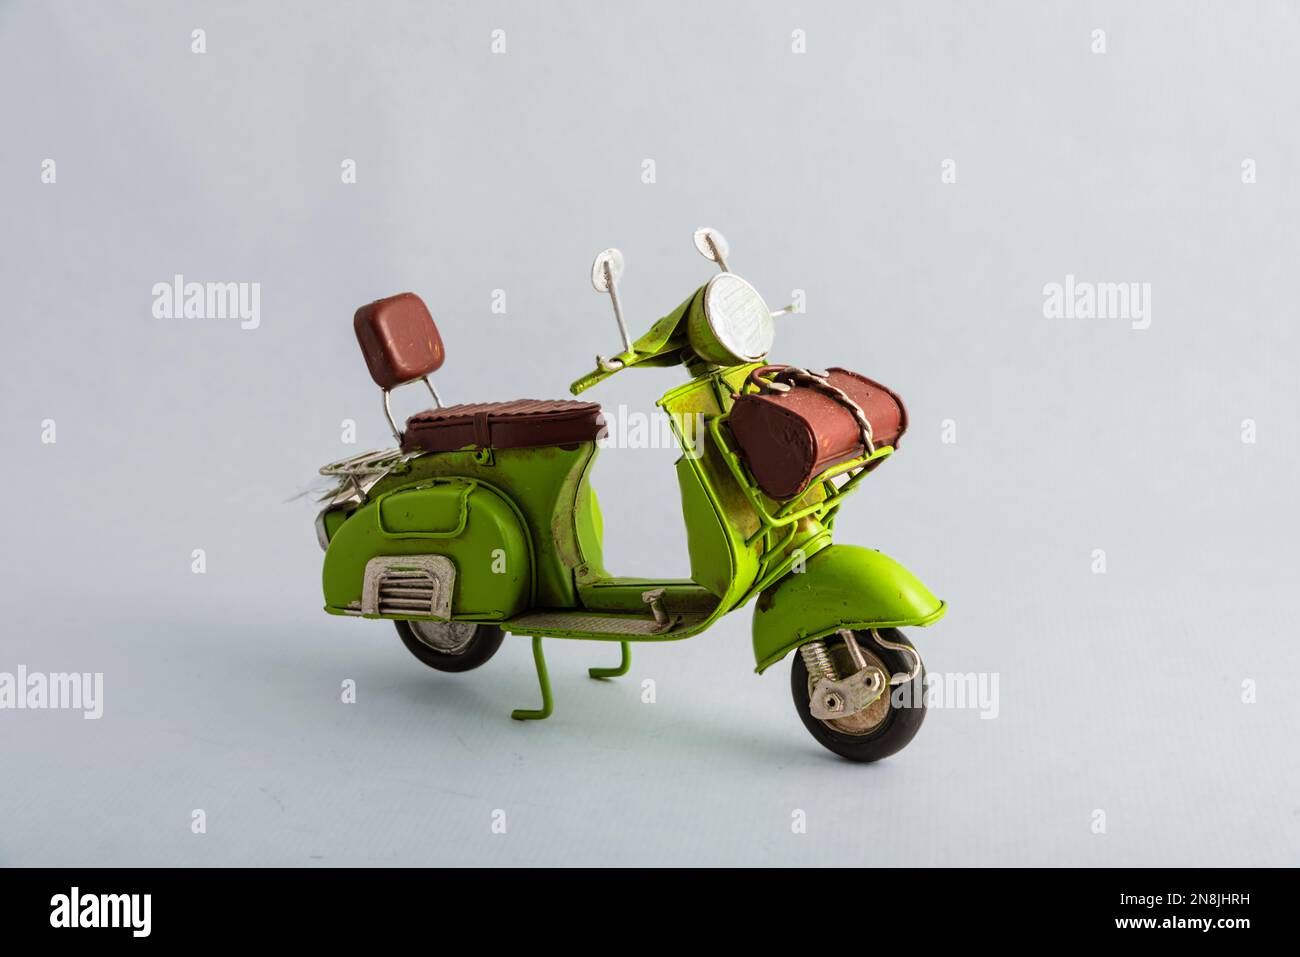 La photographie d'une moto verte avec un siège marron. Figurines de  collection en métal vintage Photo Stock - Alamy